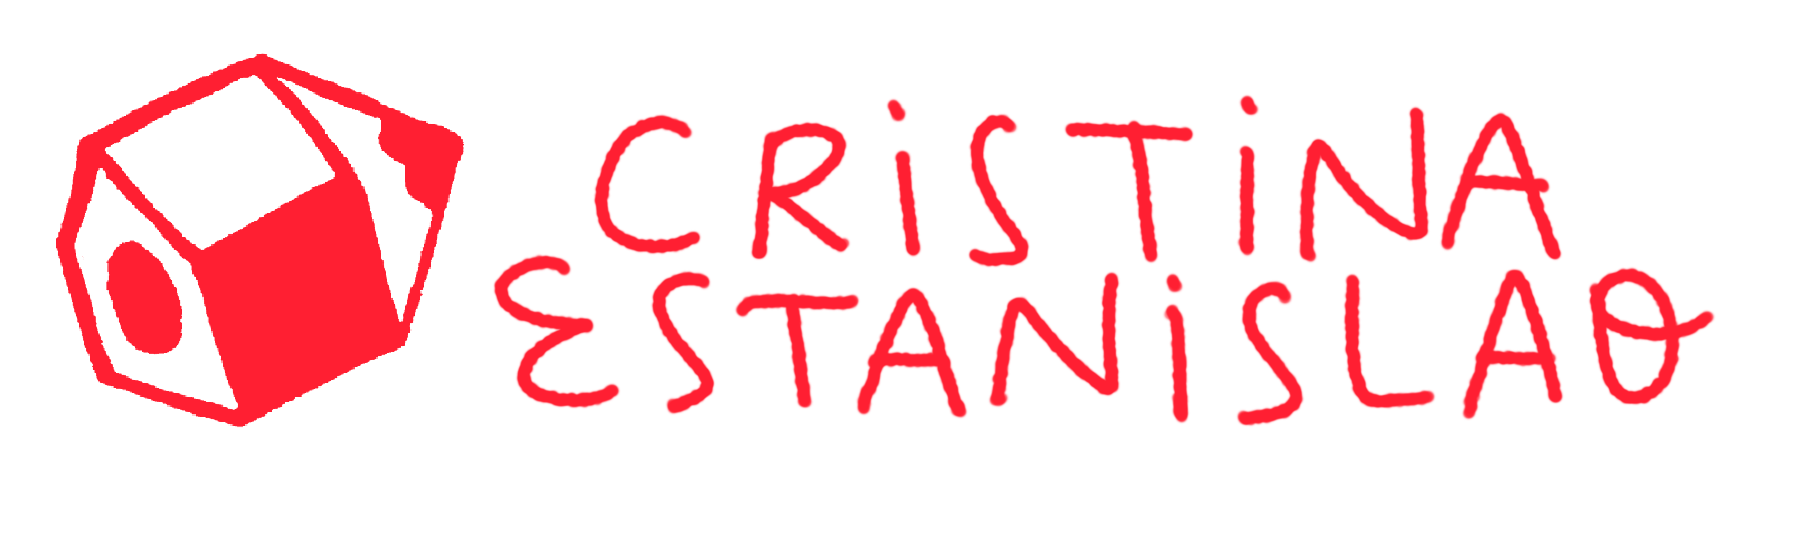 Cristina Estanislao